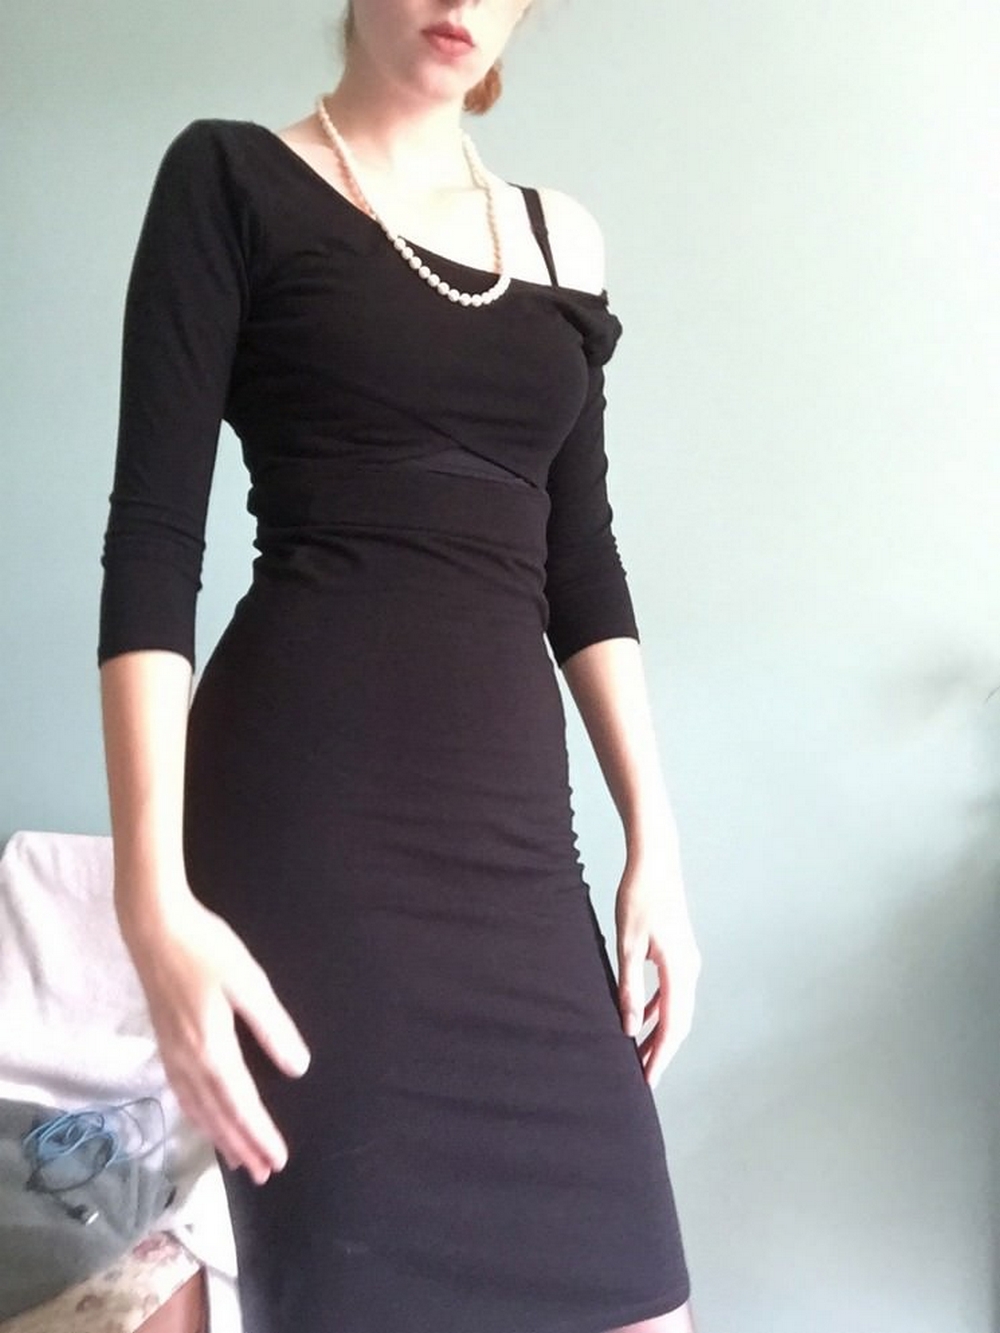 Страстный секс с шикарной красоткой в черном платье - купитьзимнийкостюм.рф